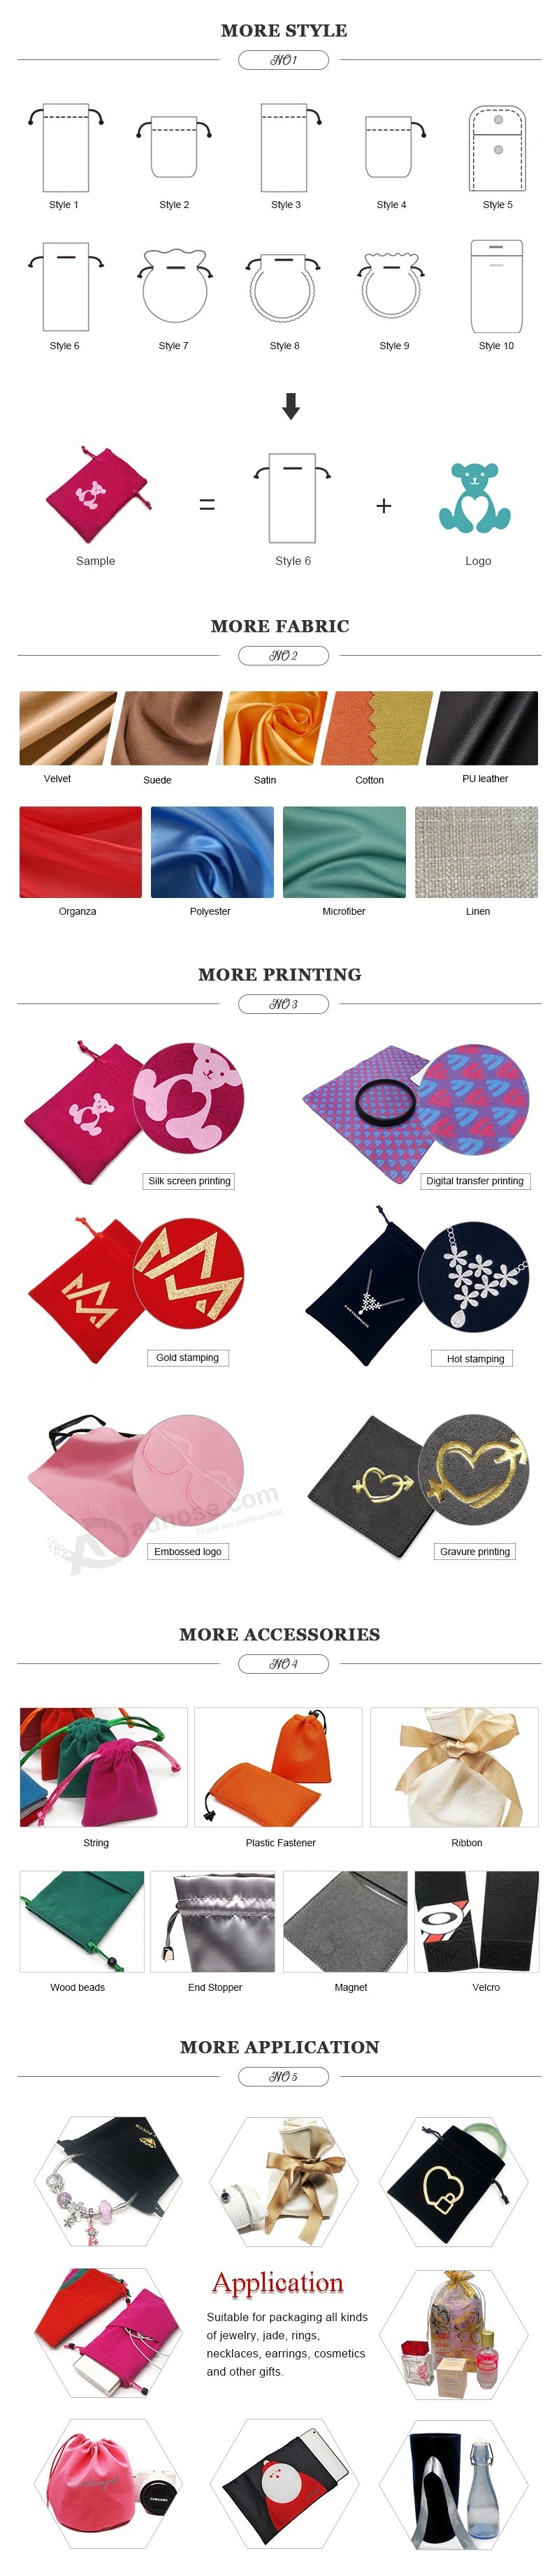 Bolsa de cetim personalizada para joias com bolsa com cordão